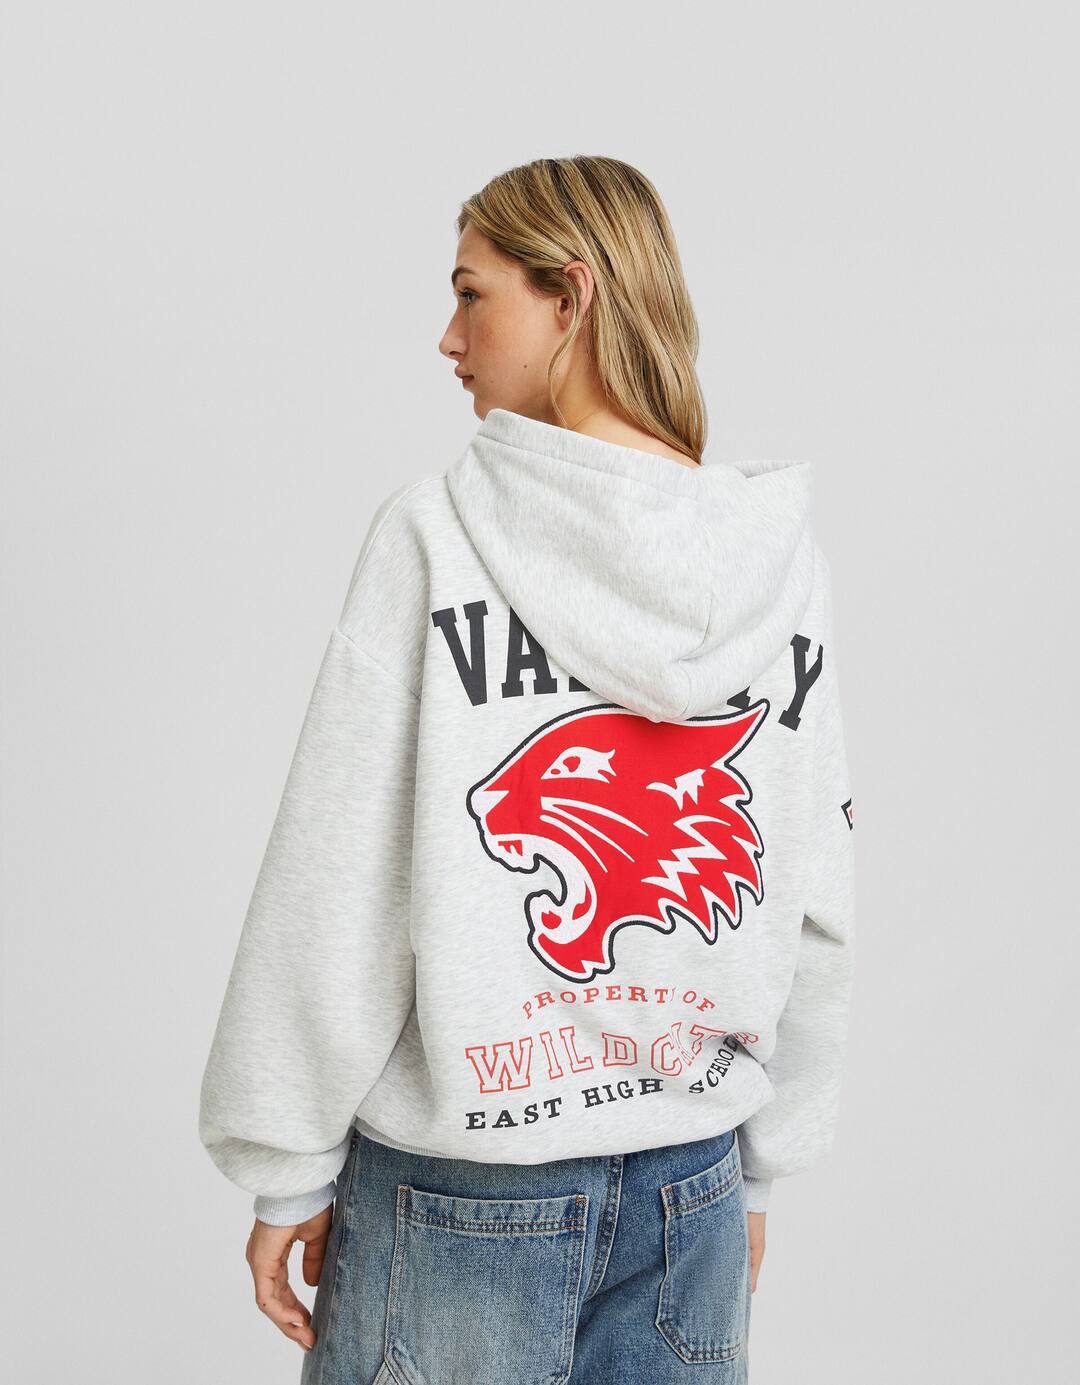 Printed High School Musical zip-up hoodie